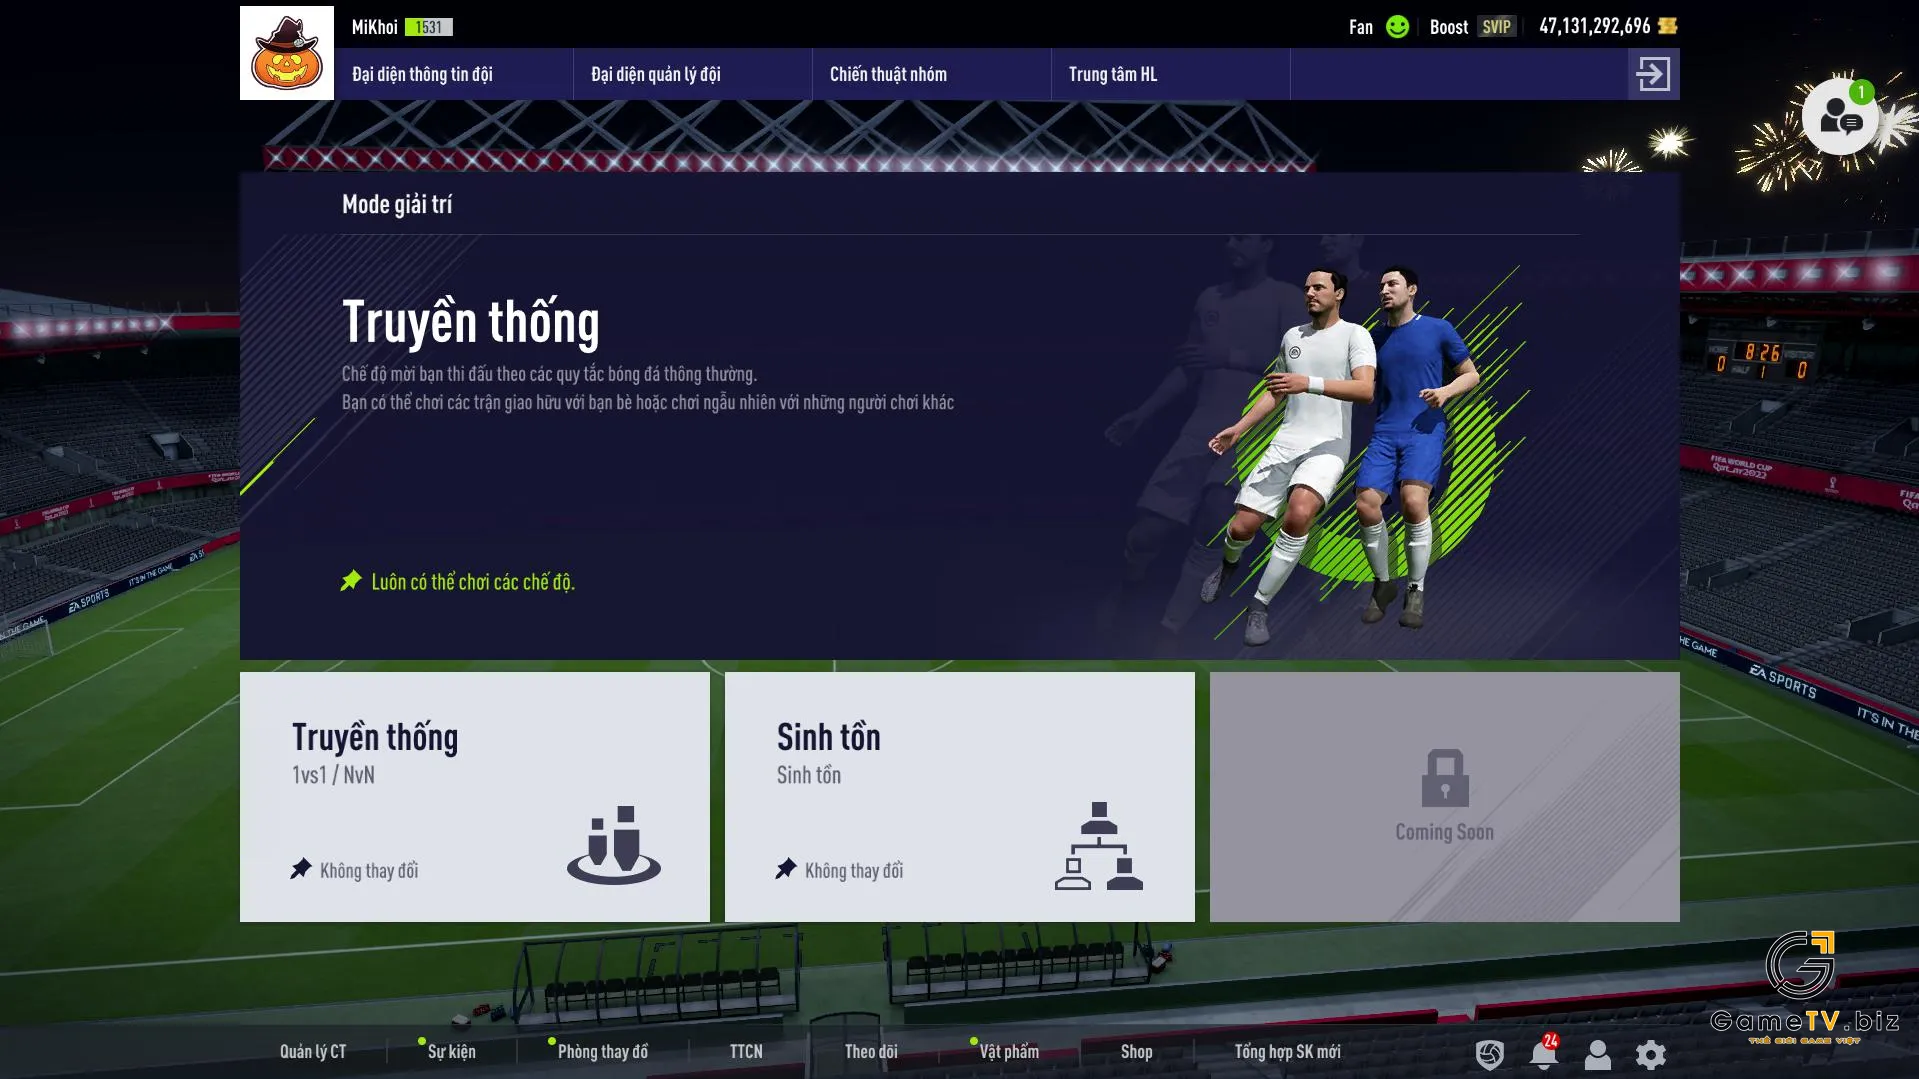 Lợi ích khi đá giao hữu FIFA Online 4 với bạn bè